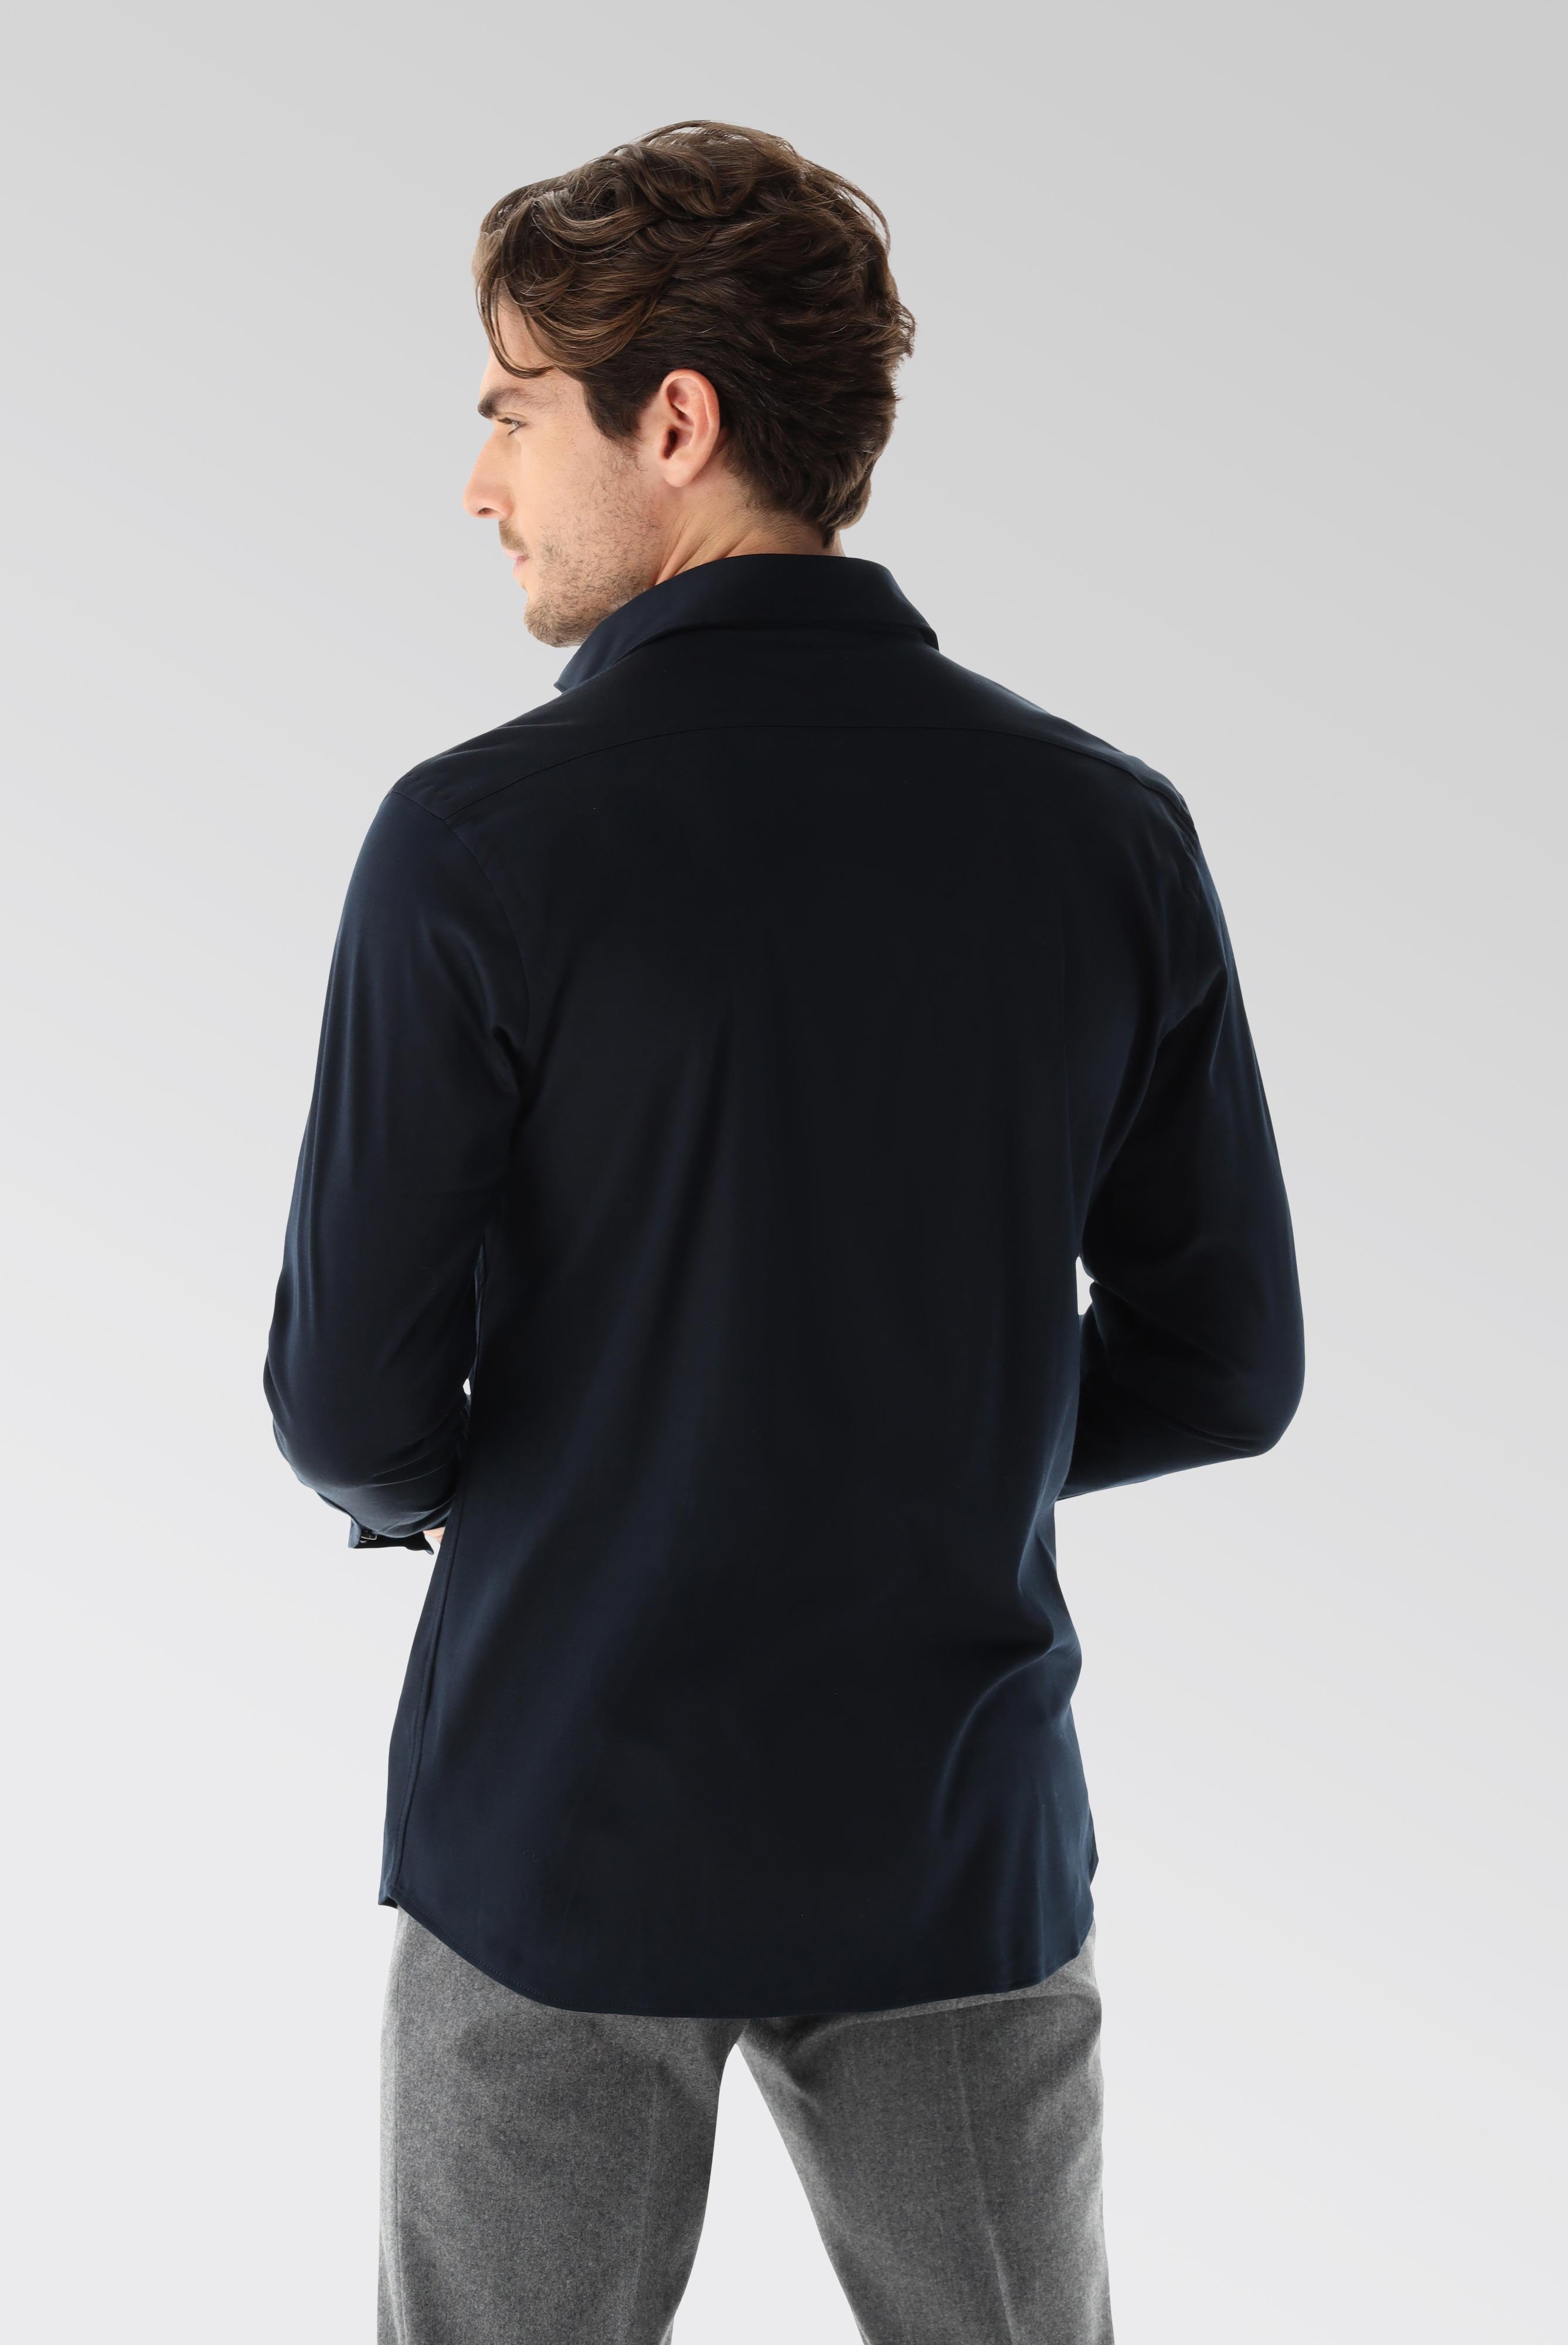 Bügelleichte Hemden+Jersey Hemd mit glänzender Optik Tailor Fit+20.1683.UC.180031.790.L